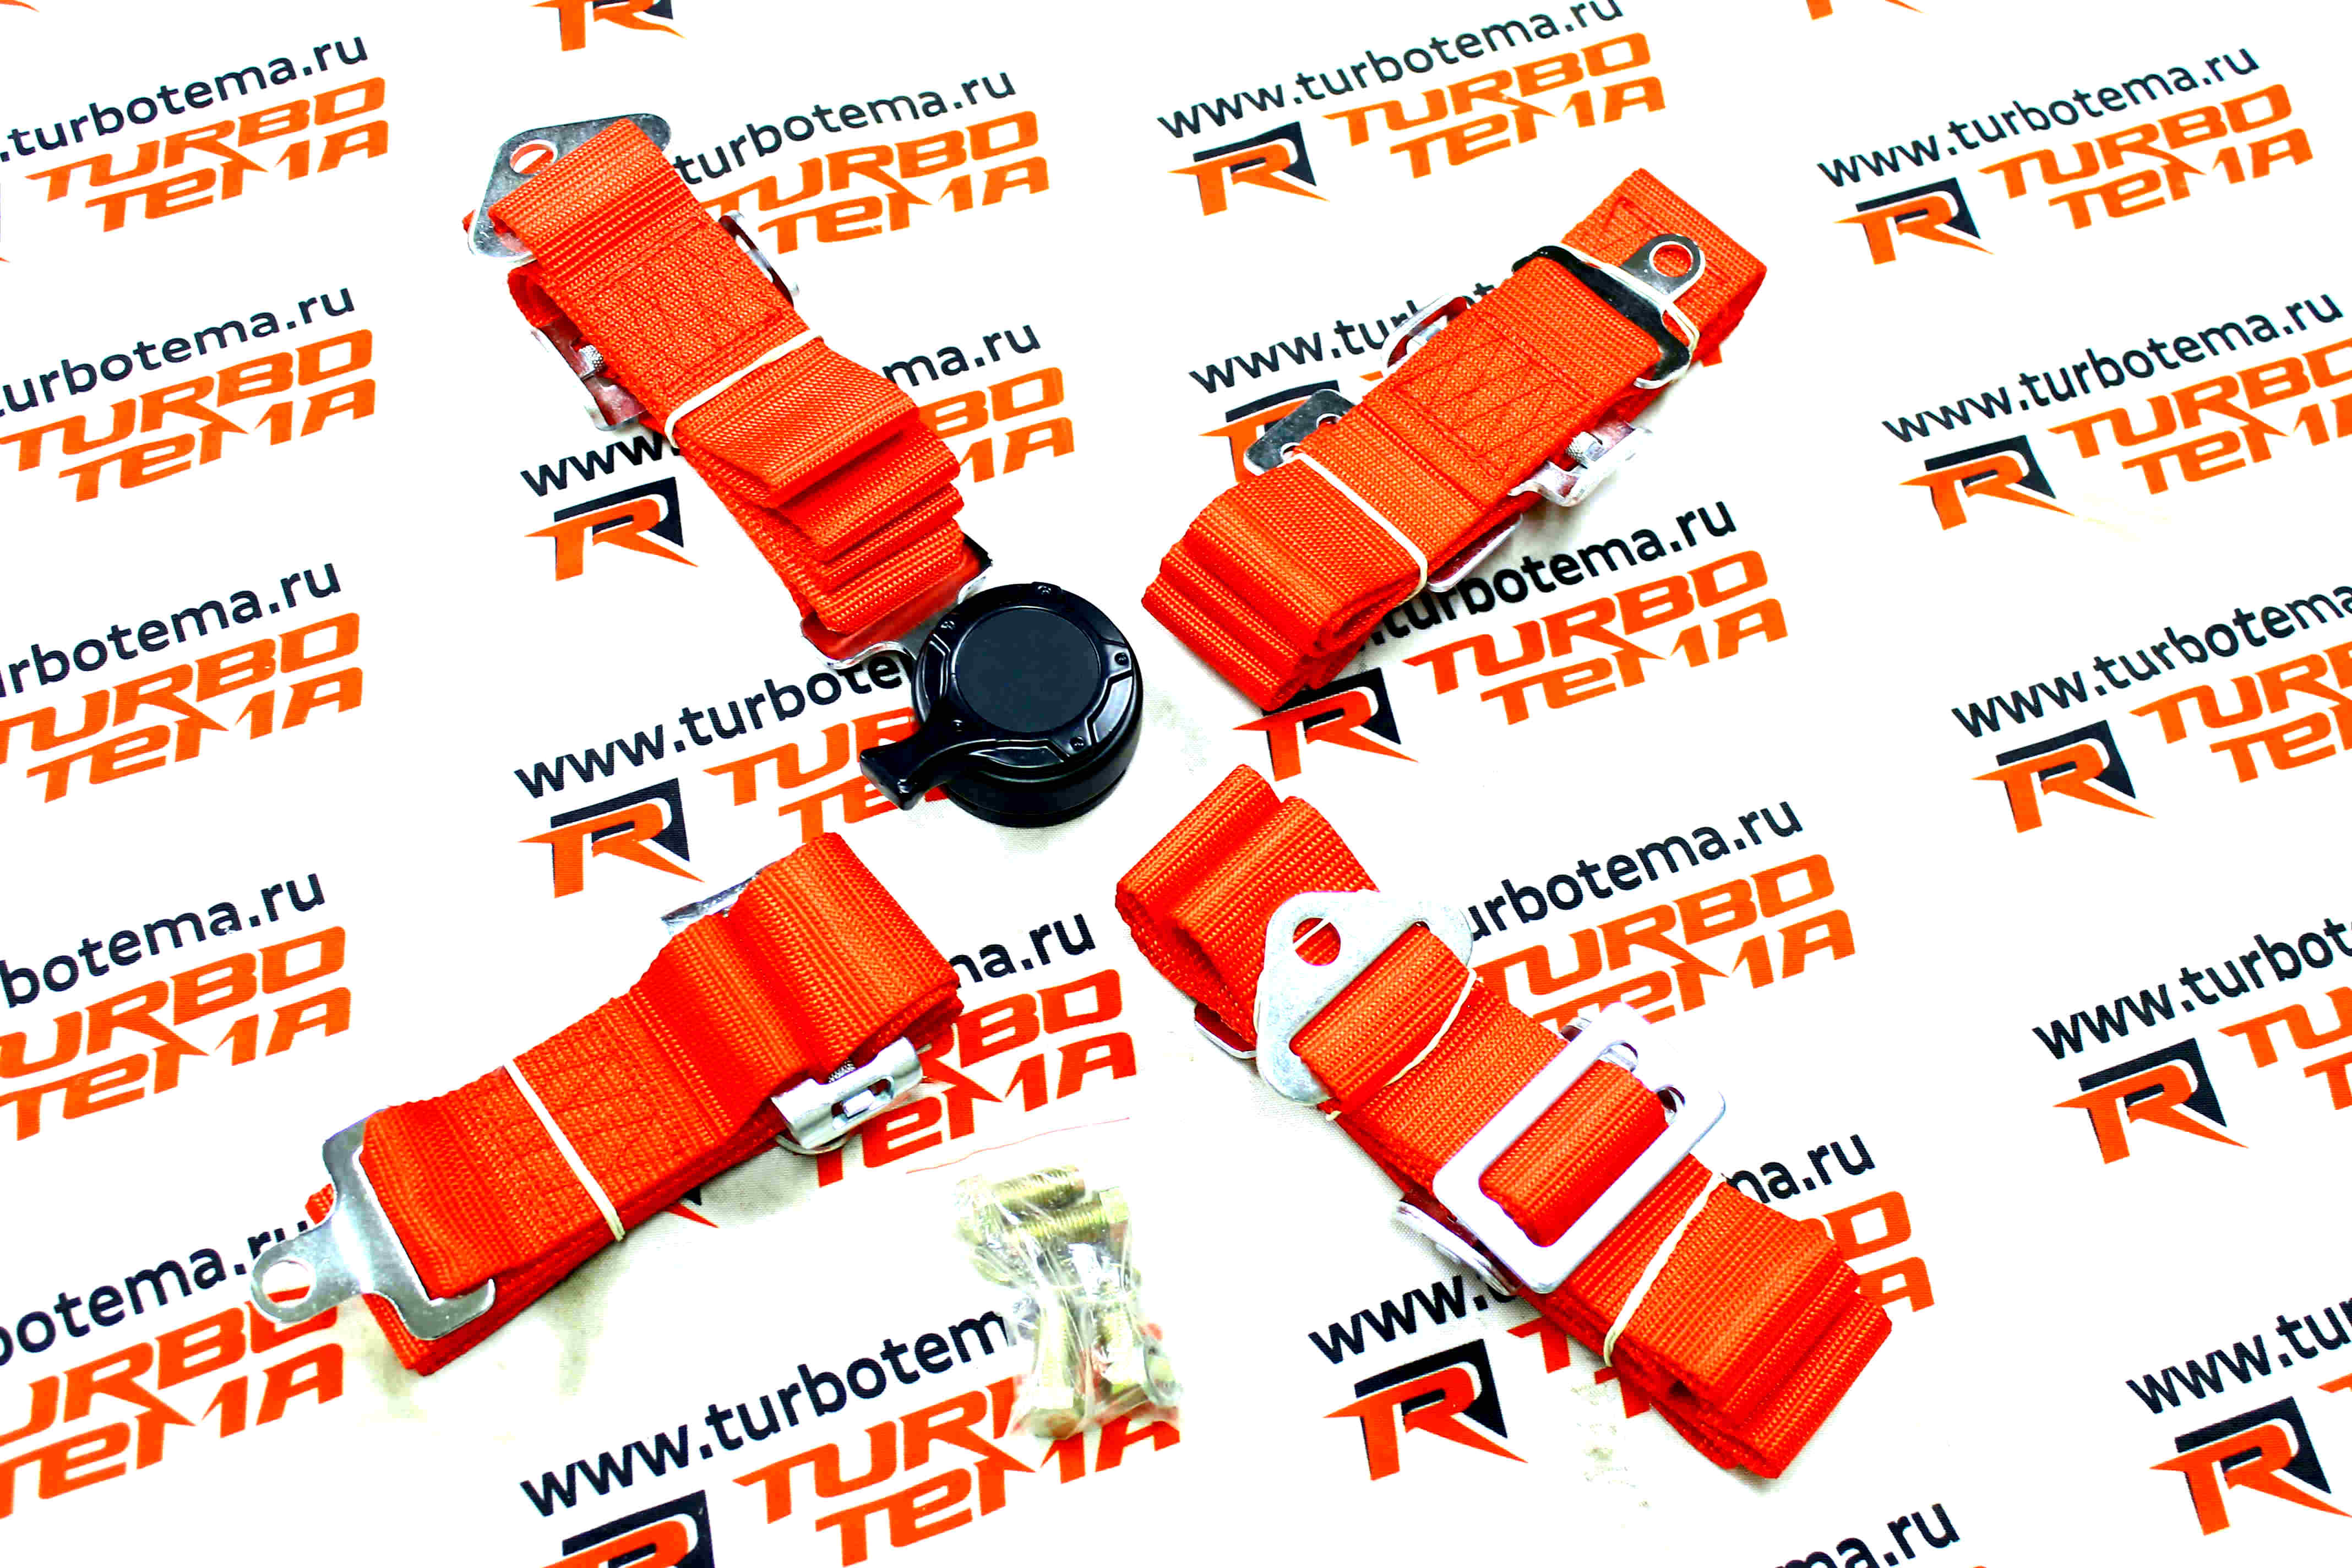 Ремни безопасности "TURBOTEMA" 4-х точечные, 2" ширина, быстросъемные (красные) JBR4001-4